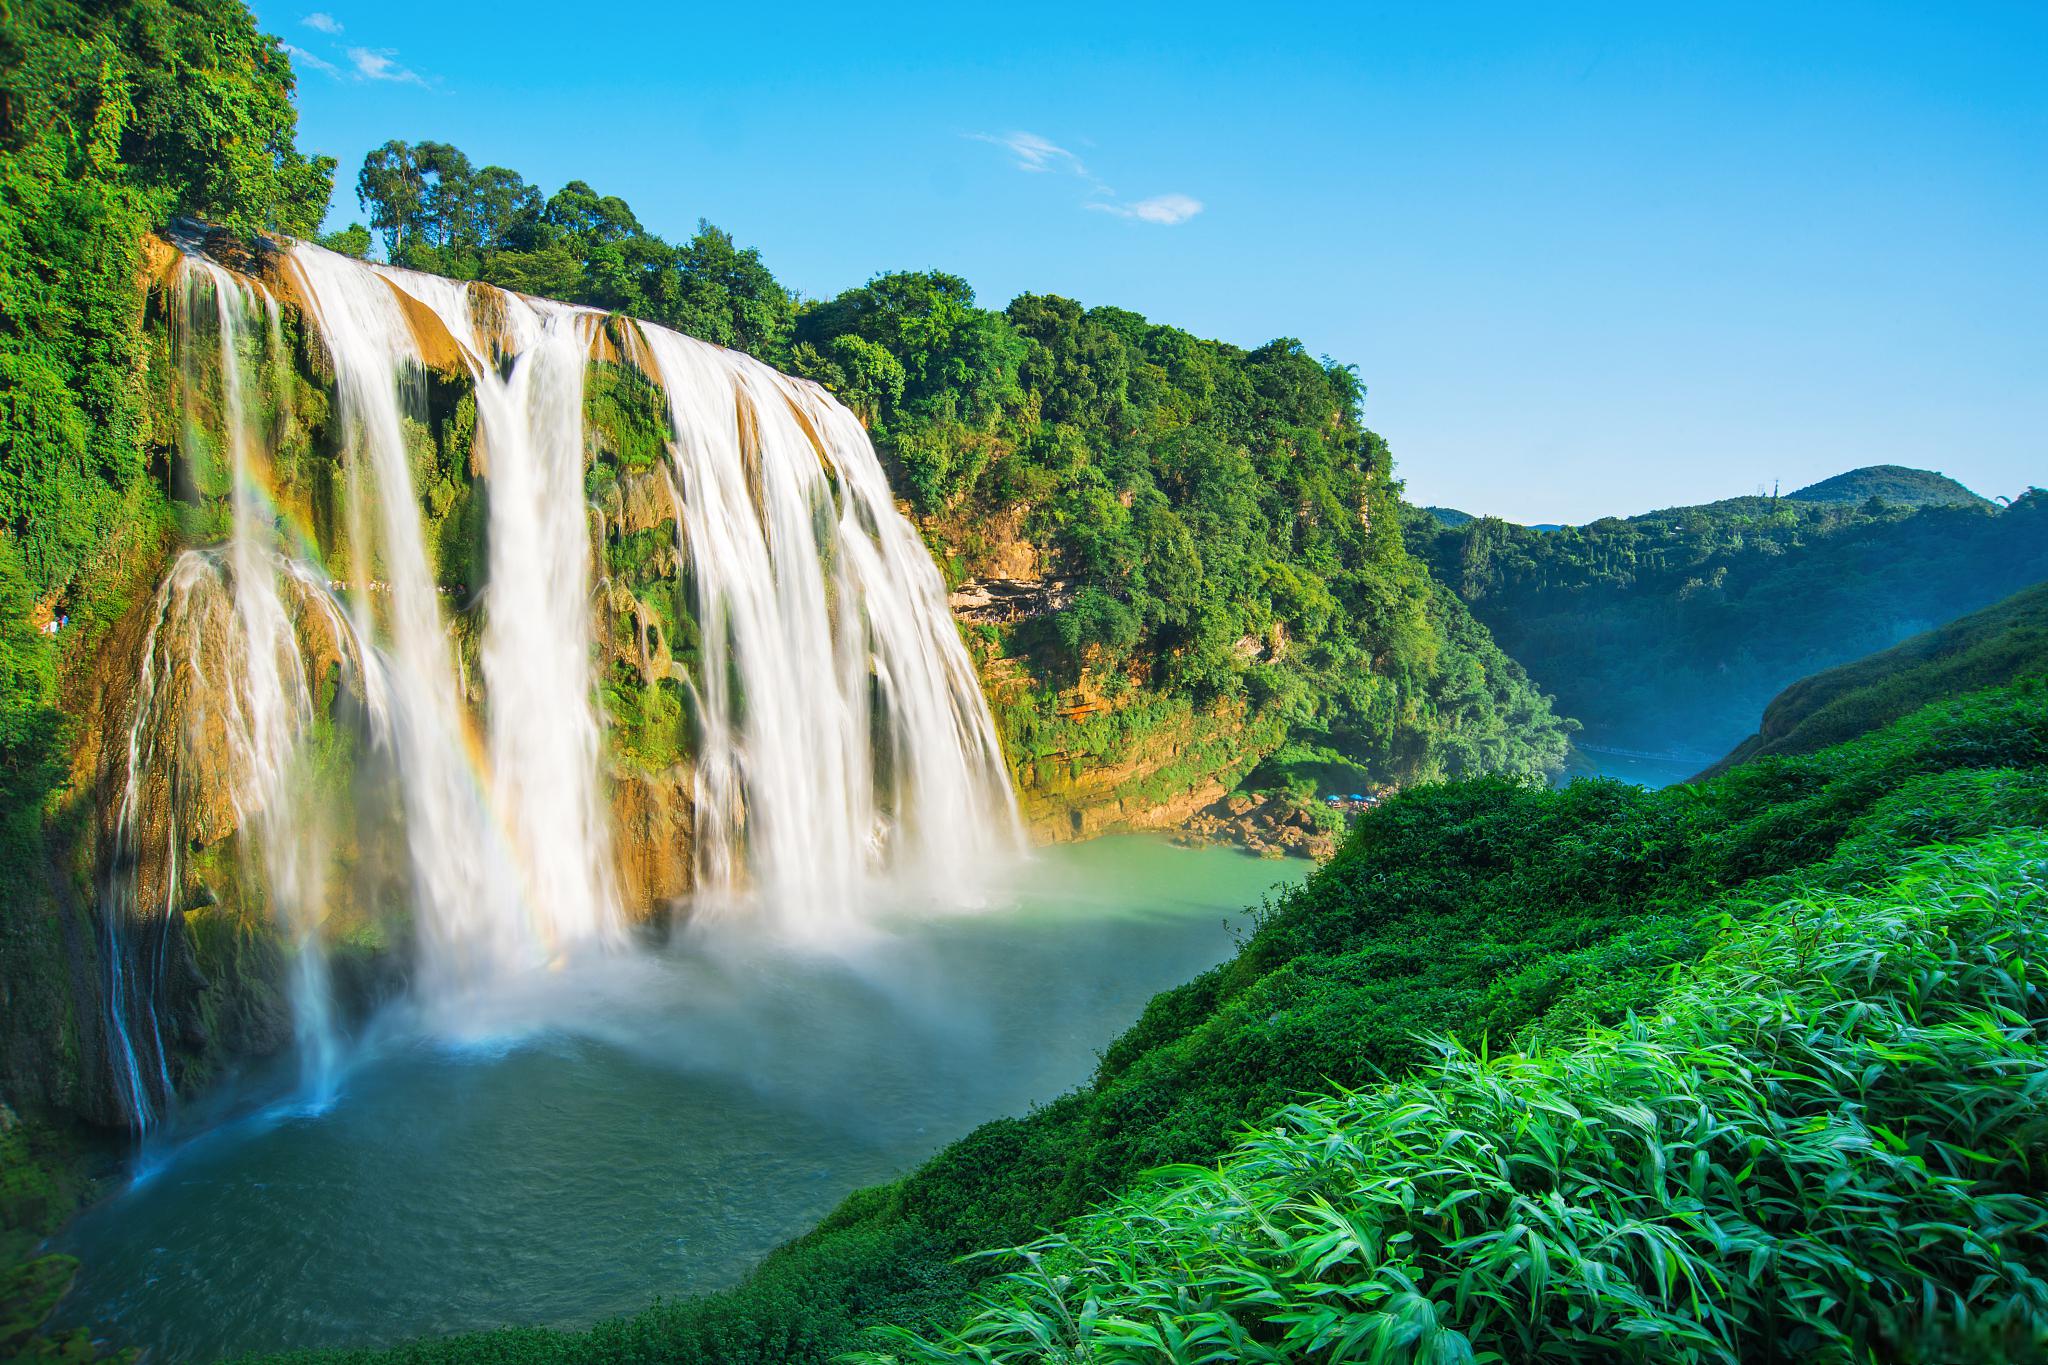 黄果树瀑布——中国最大瀑布 黄果树瀑布位于中国贵州省安顺市,属于大